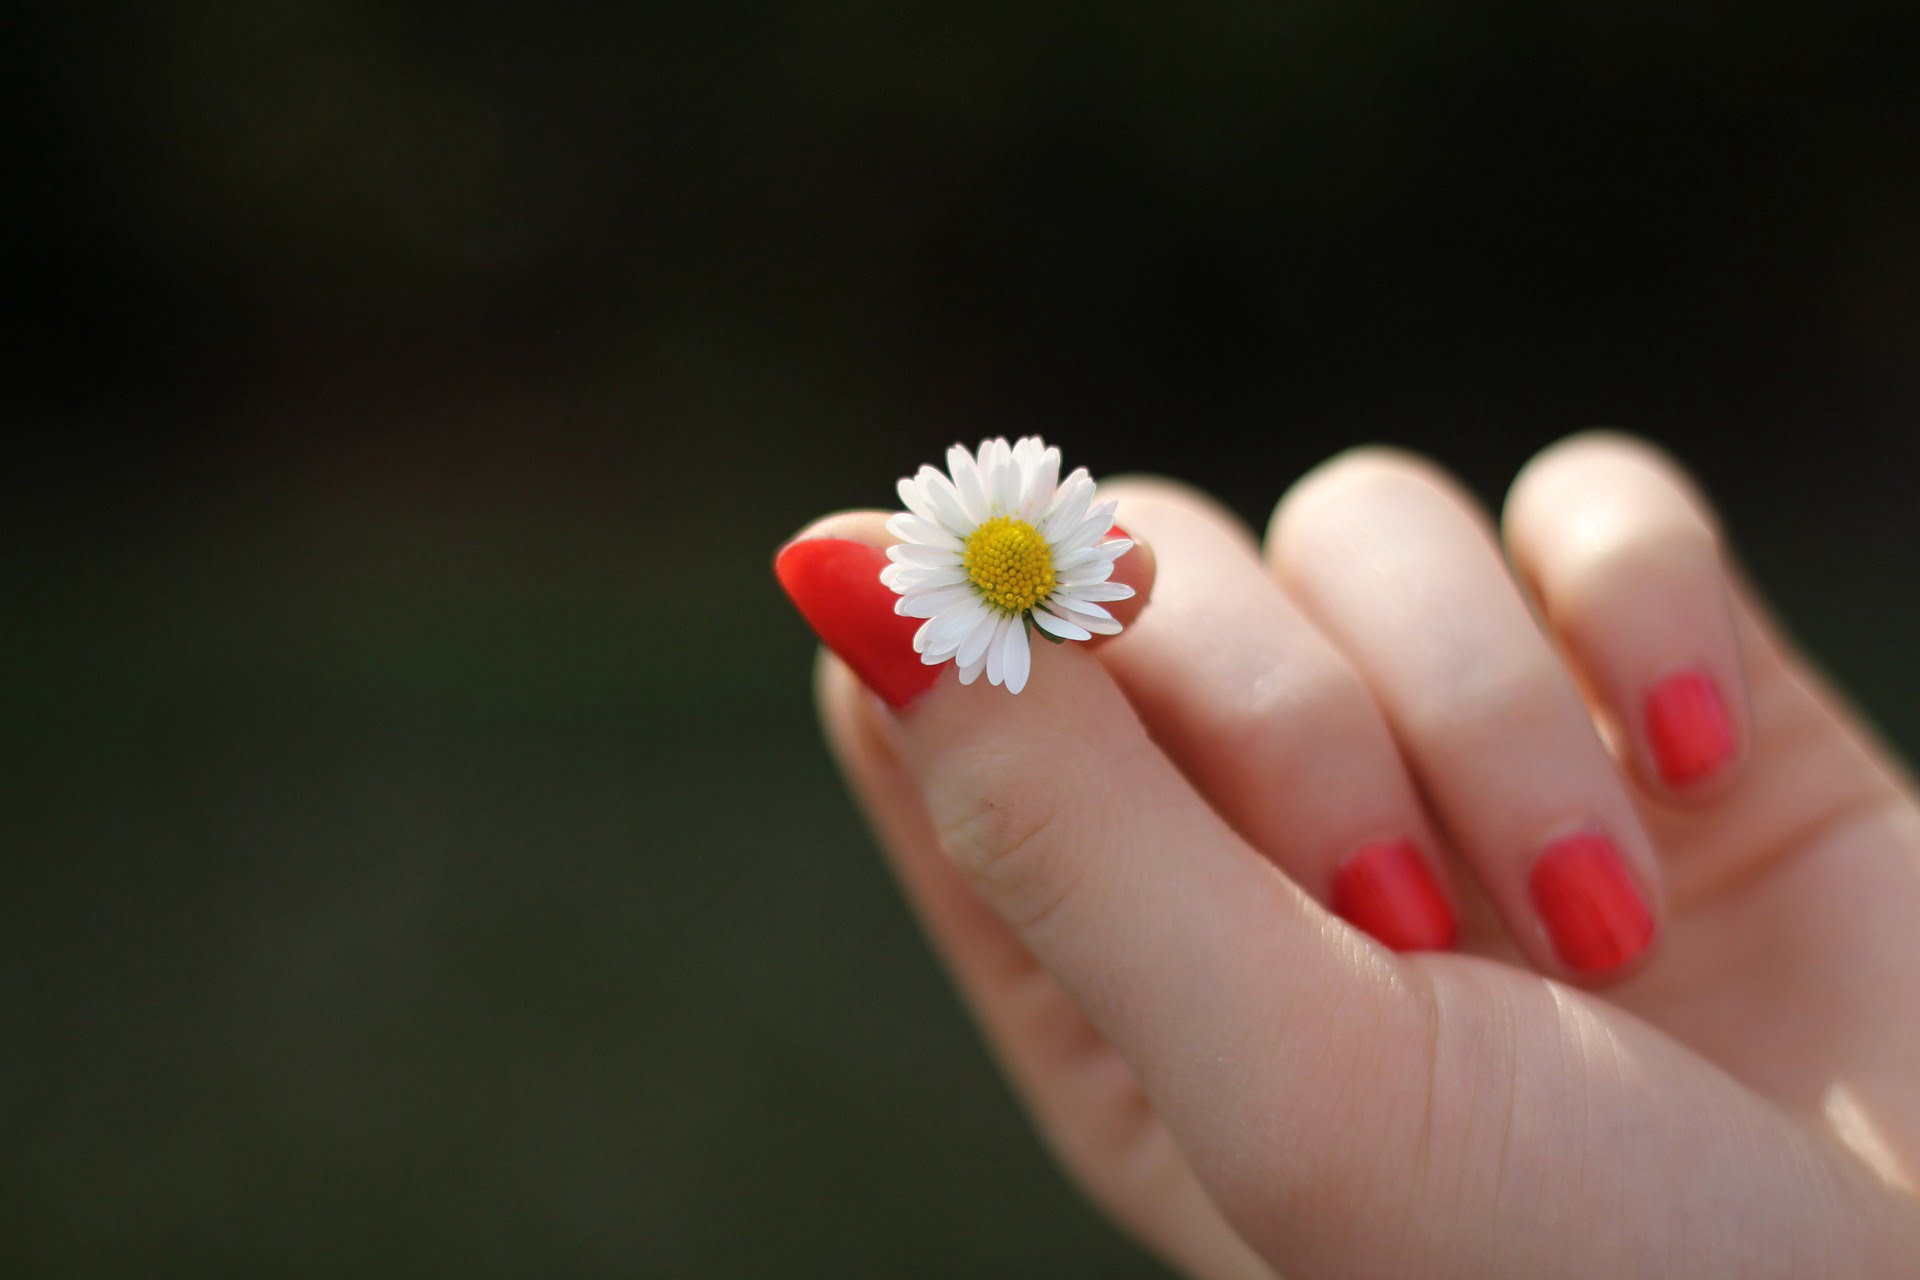 10 rimedi naturali per far crescere le unghie più velocemente